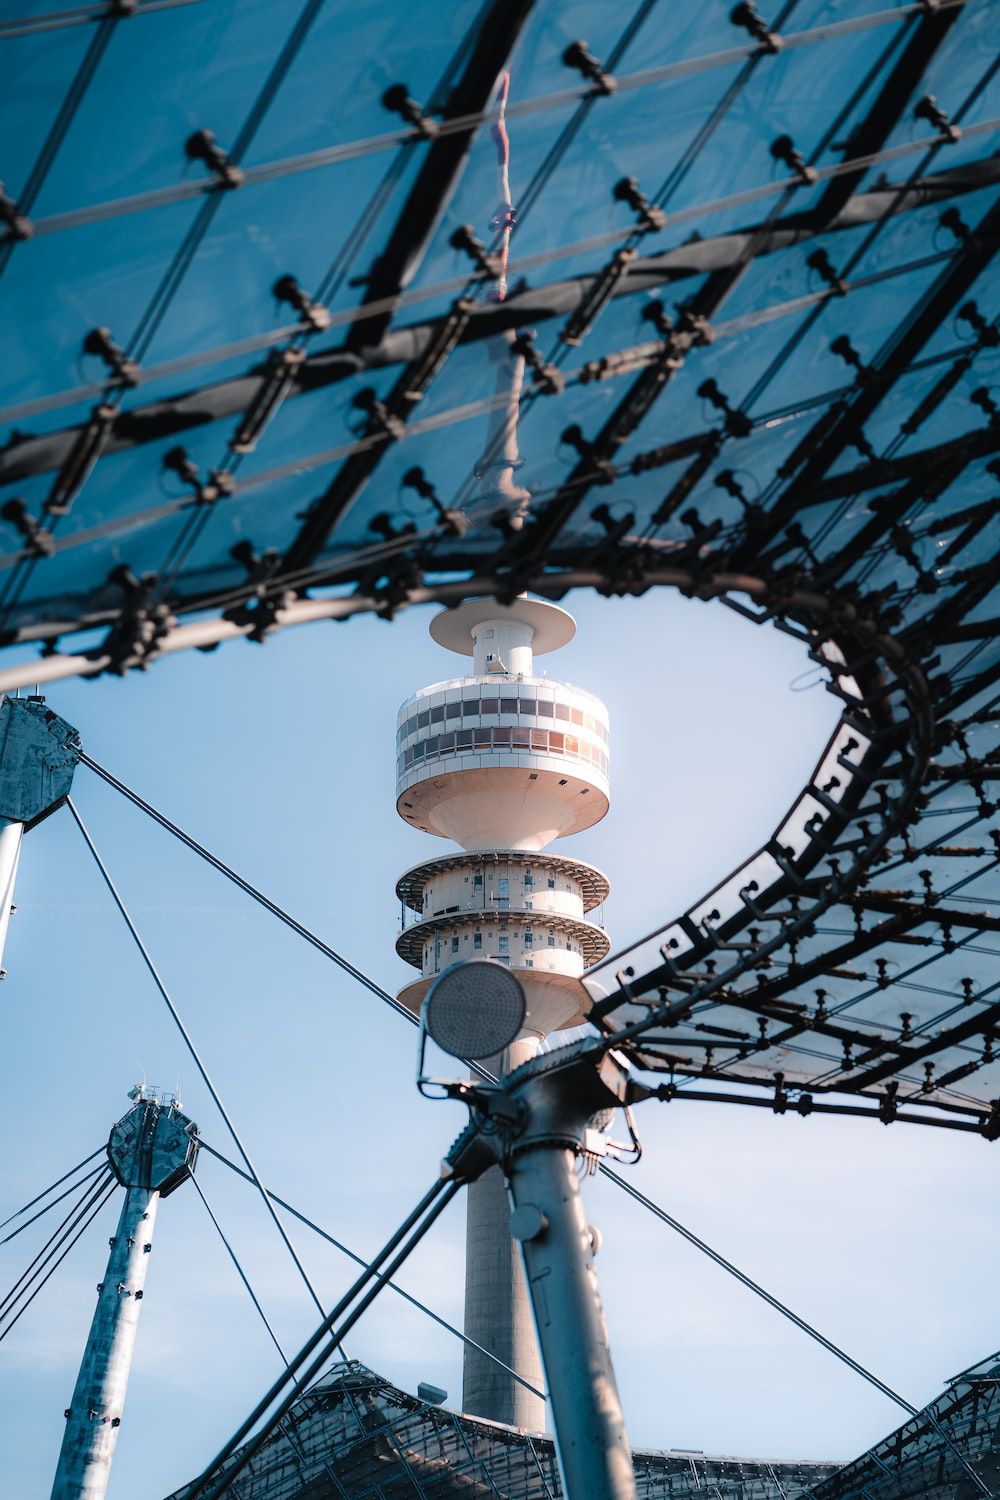  München Hintergrundbild 1000x1500. Foto zum Thema Ein hoher Turm unter blauem Himmel